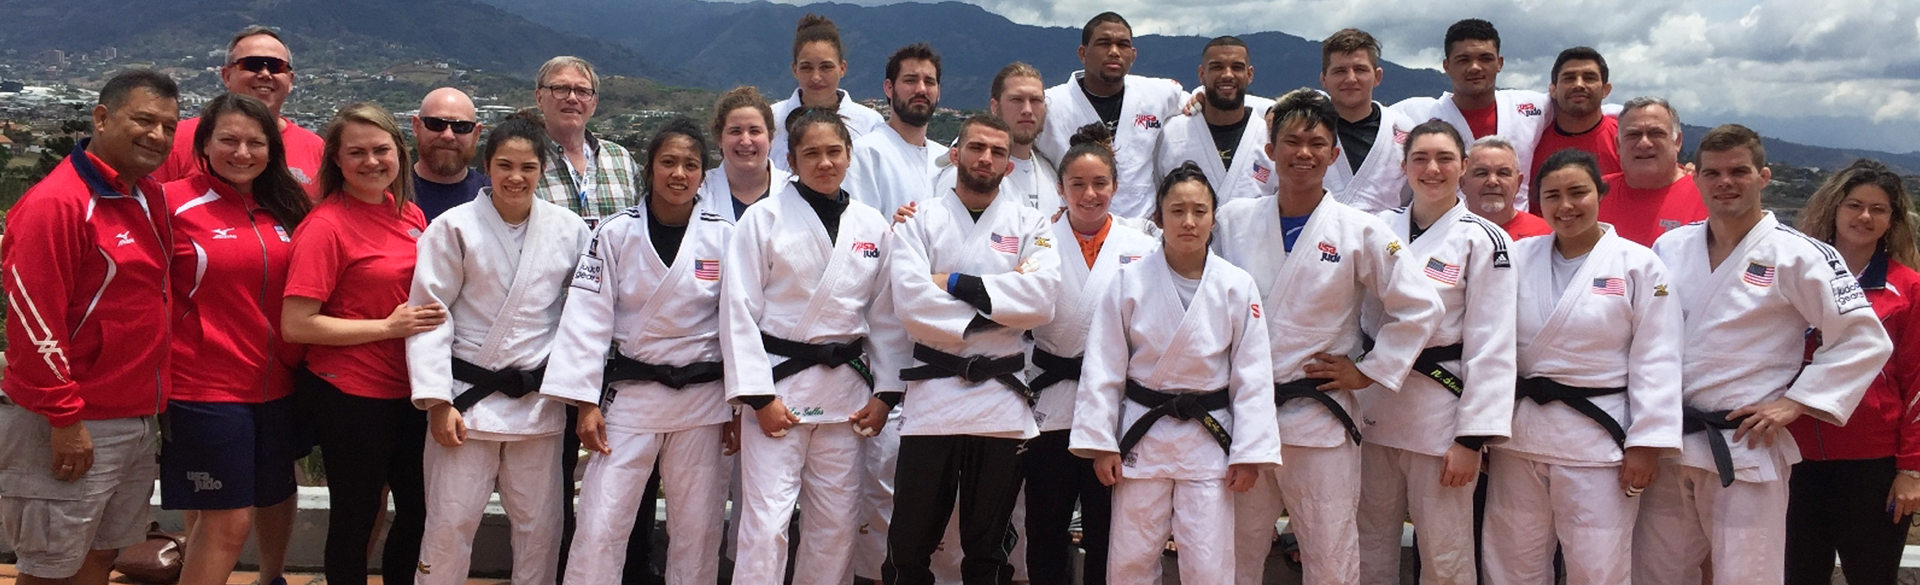 USA Judo - 7-9-21